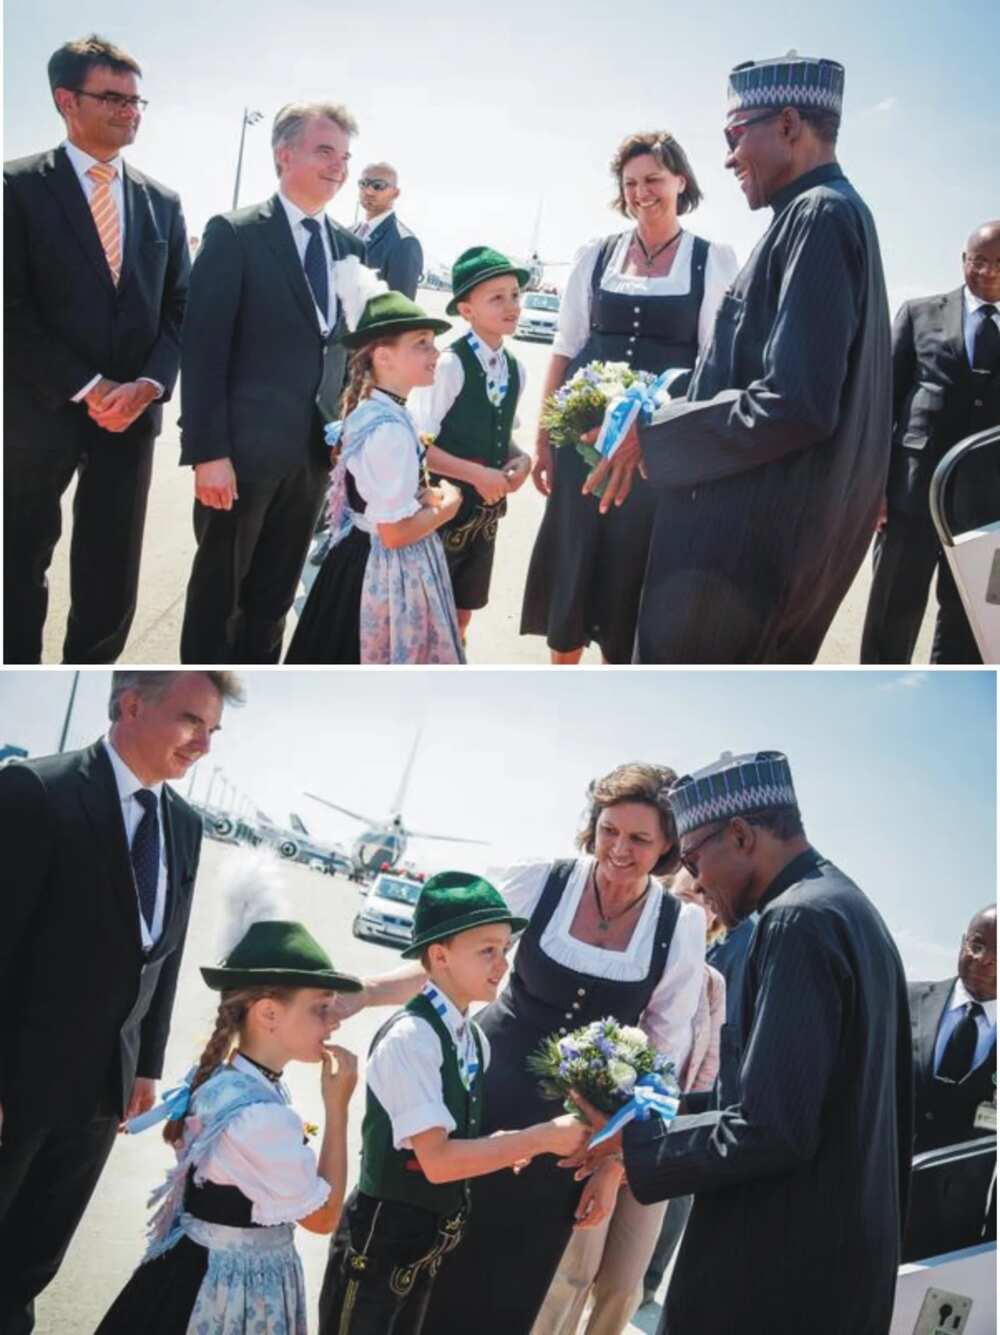 Muhammadu Buhari Arrives Germany Ahead Of G7 Summit